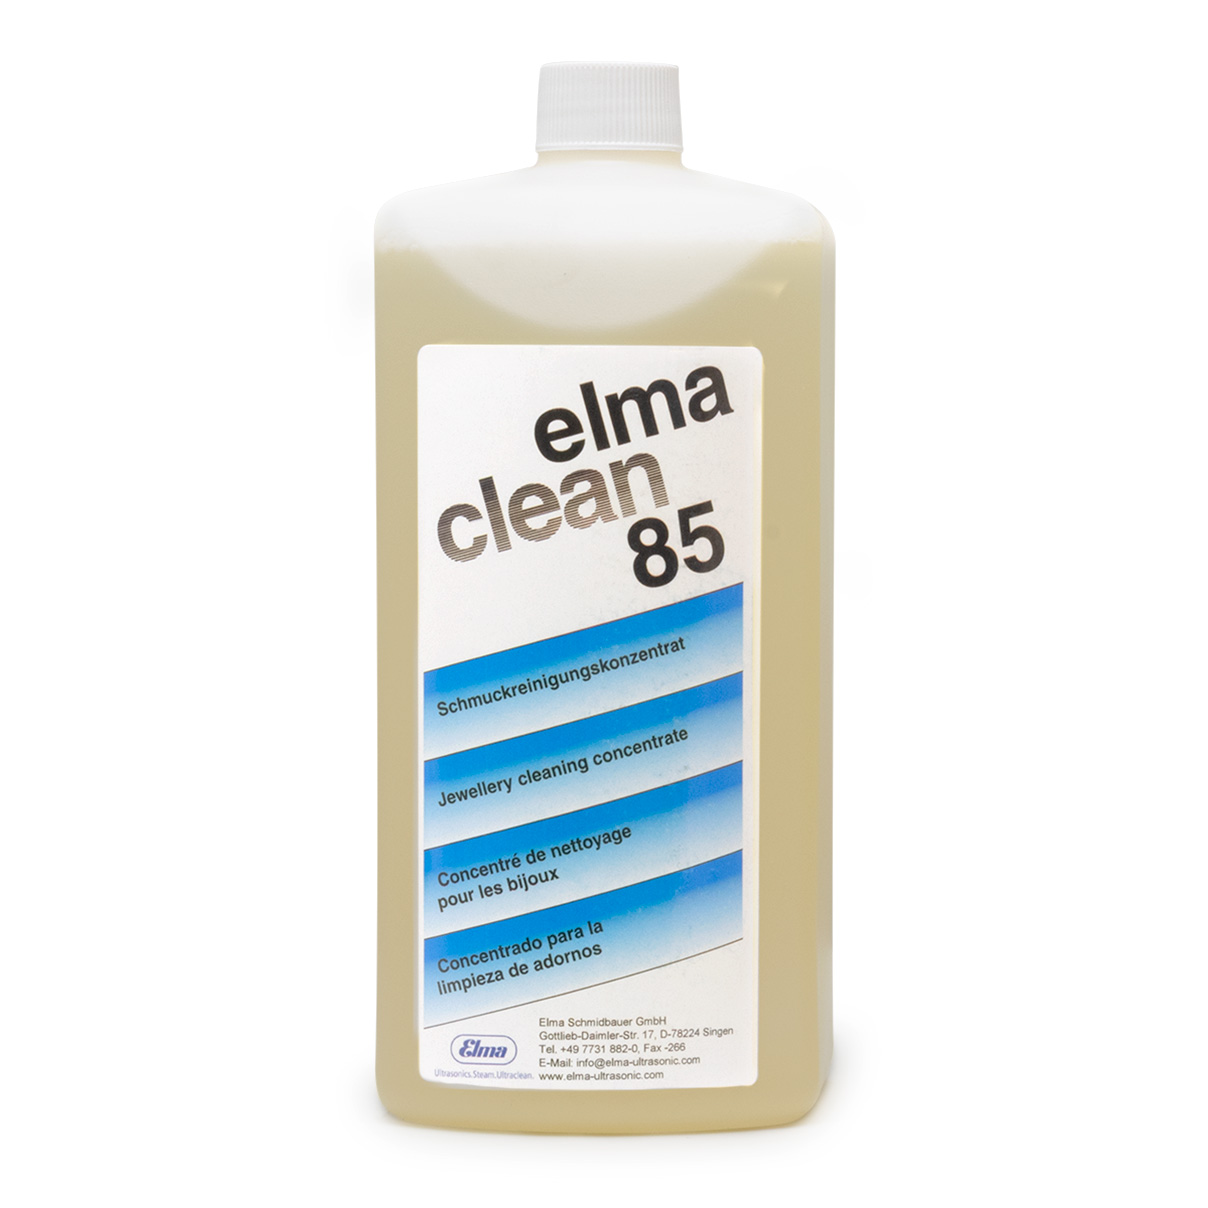 Elma Clean 85 concentré pour la bijouterie, 1 l